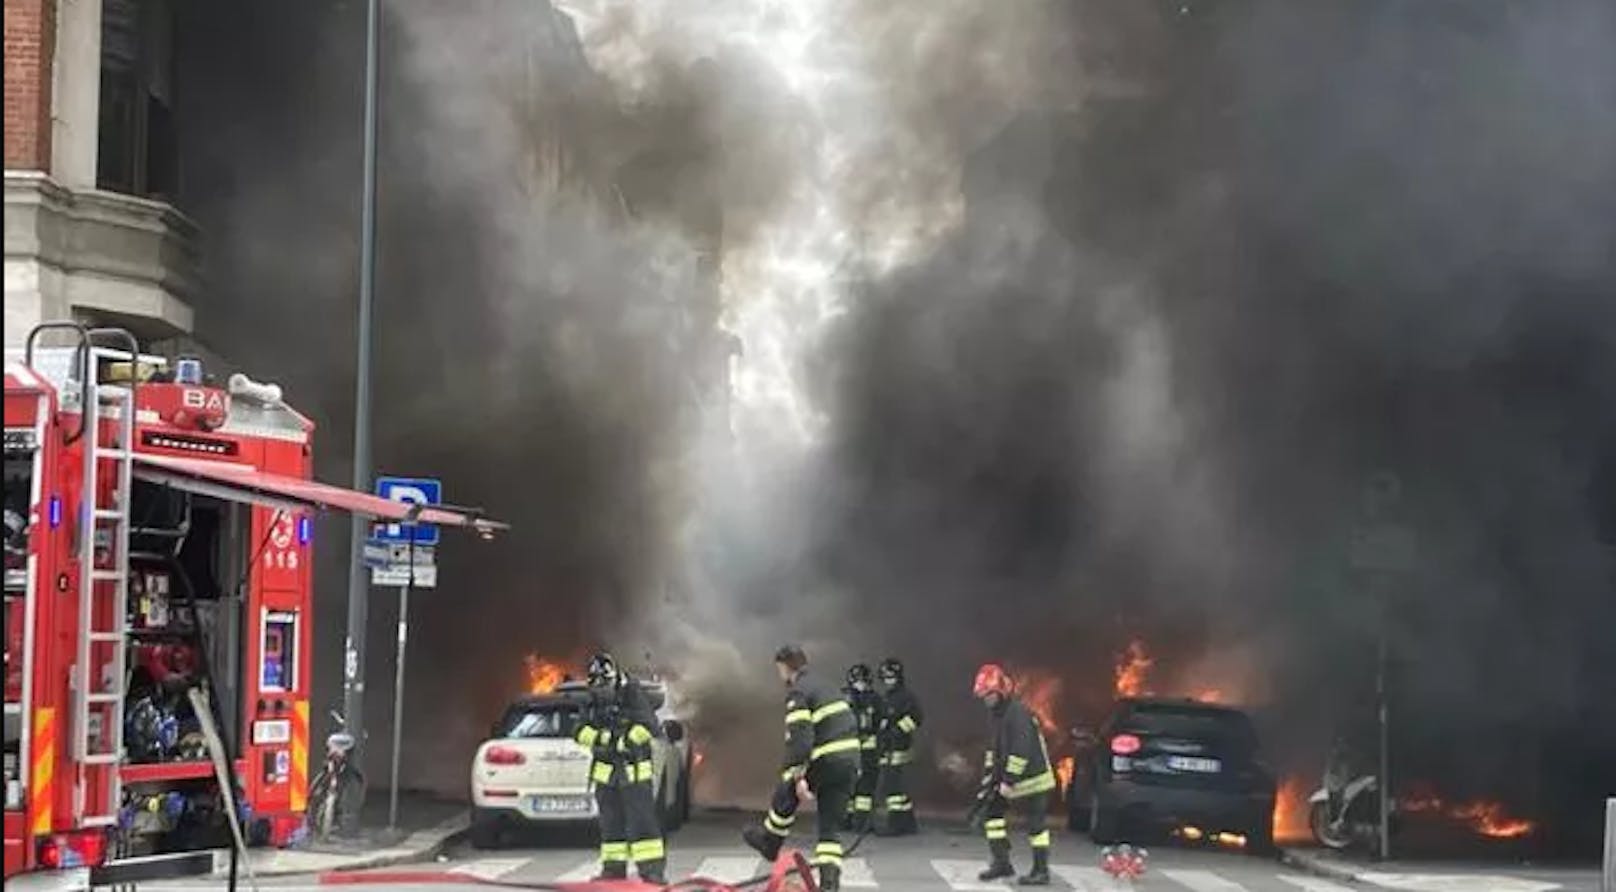 Autos in Flammen – schwere Explosion in Mailand